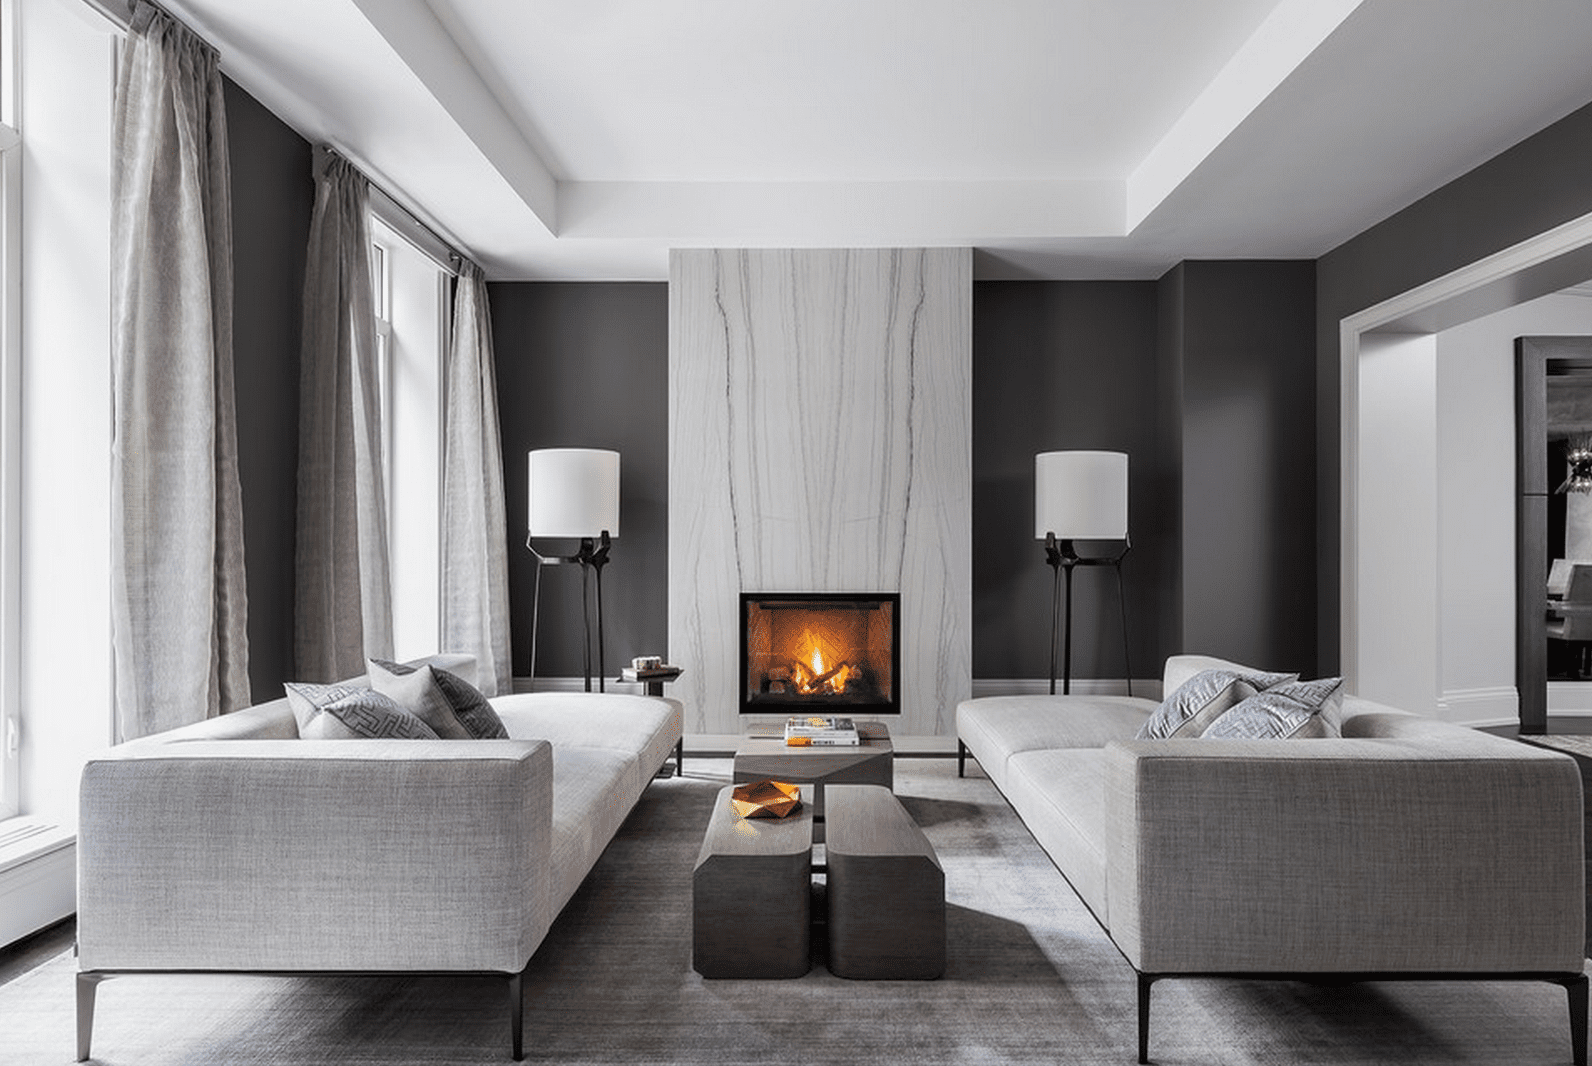 Modern White Living Room Interior Design: Timeless Elegance